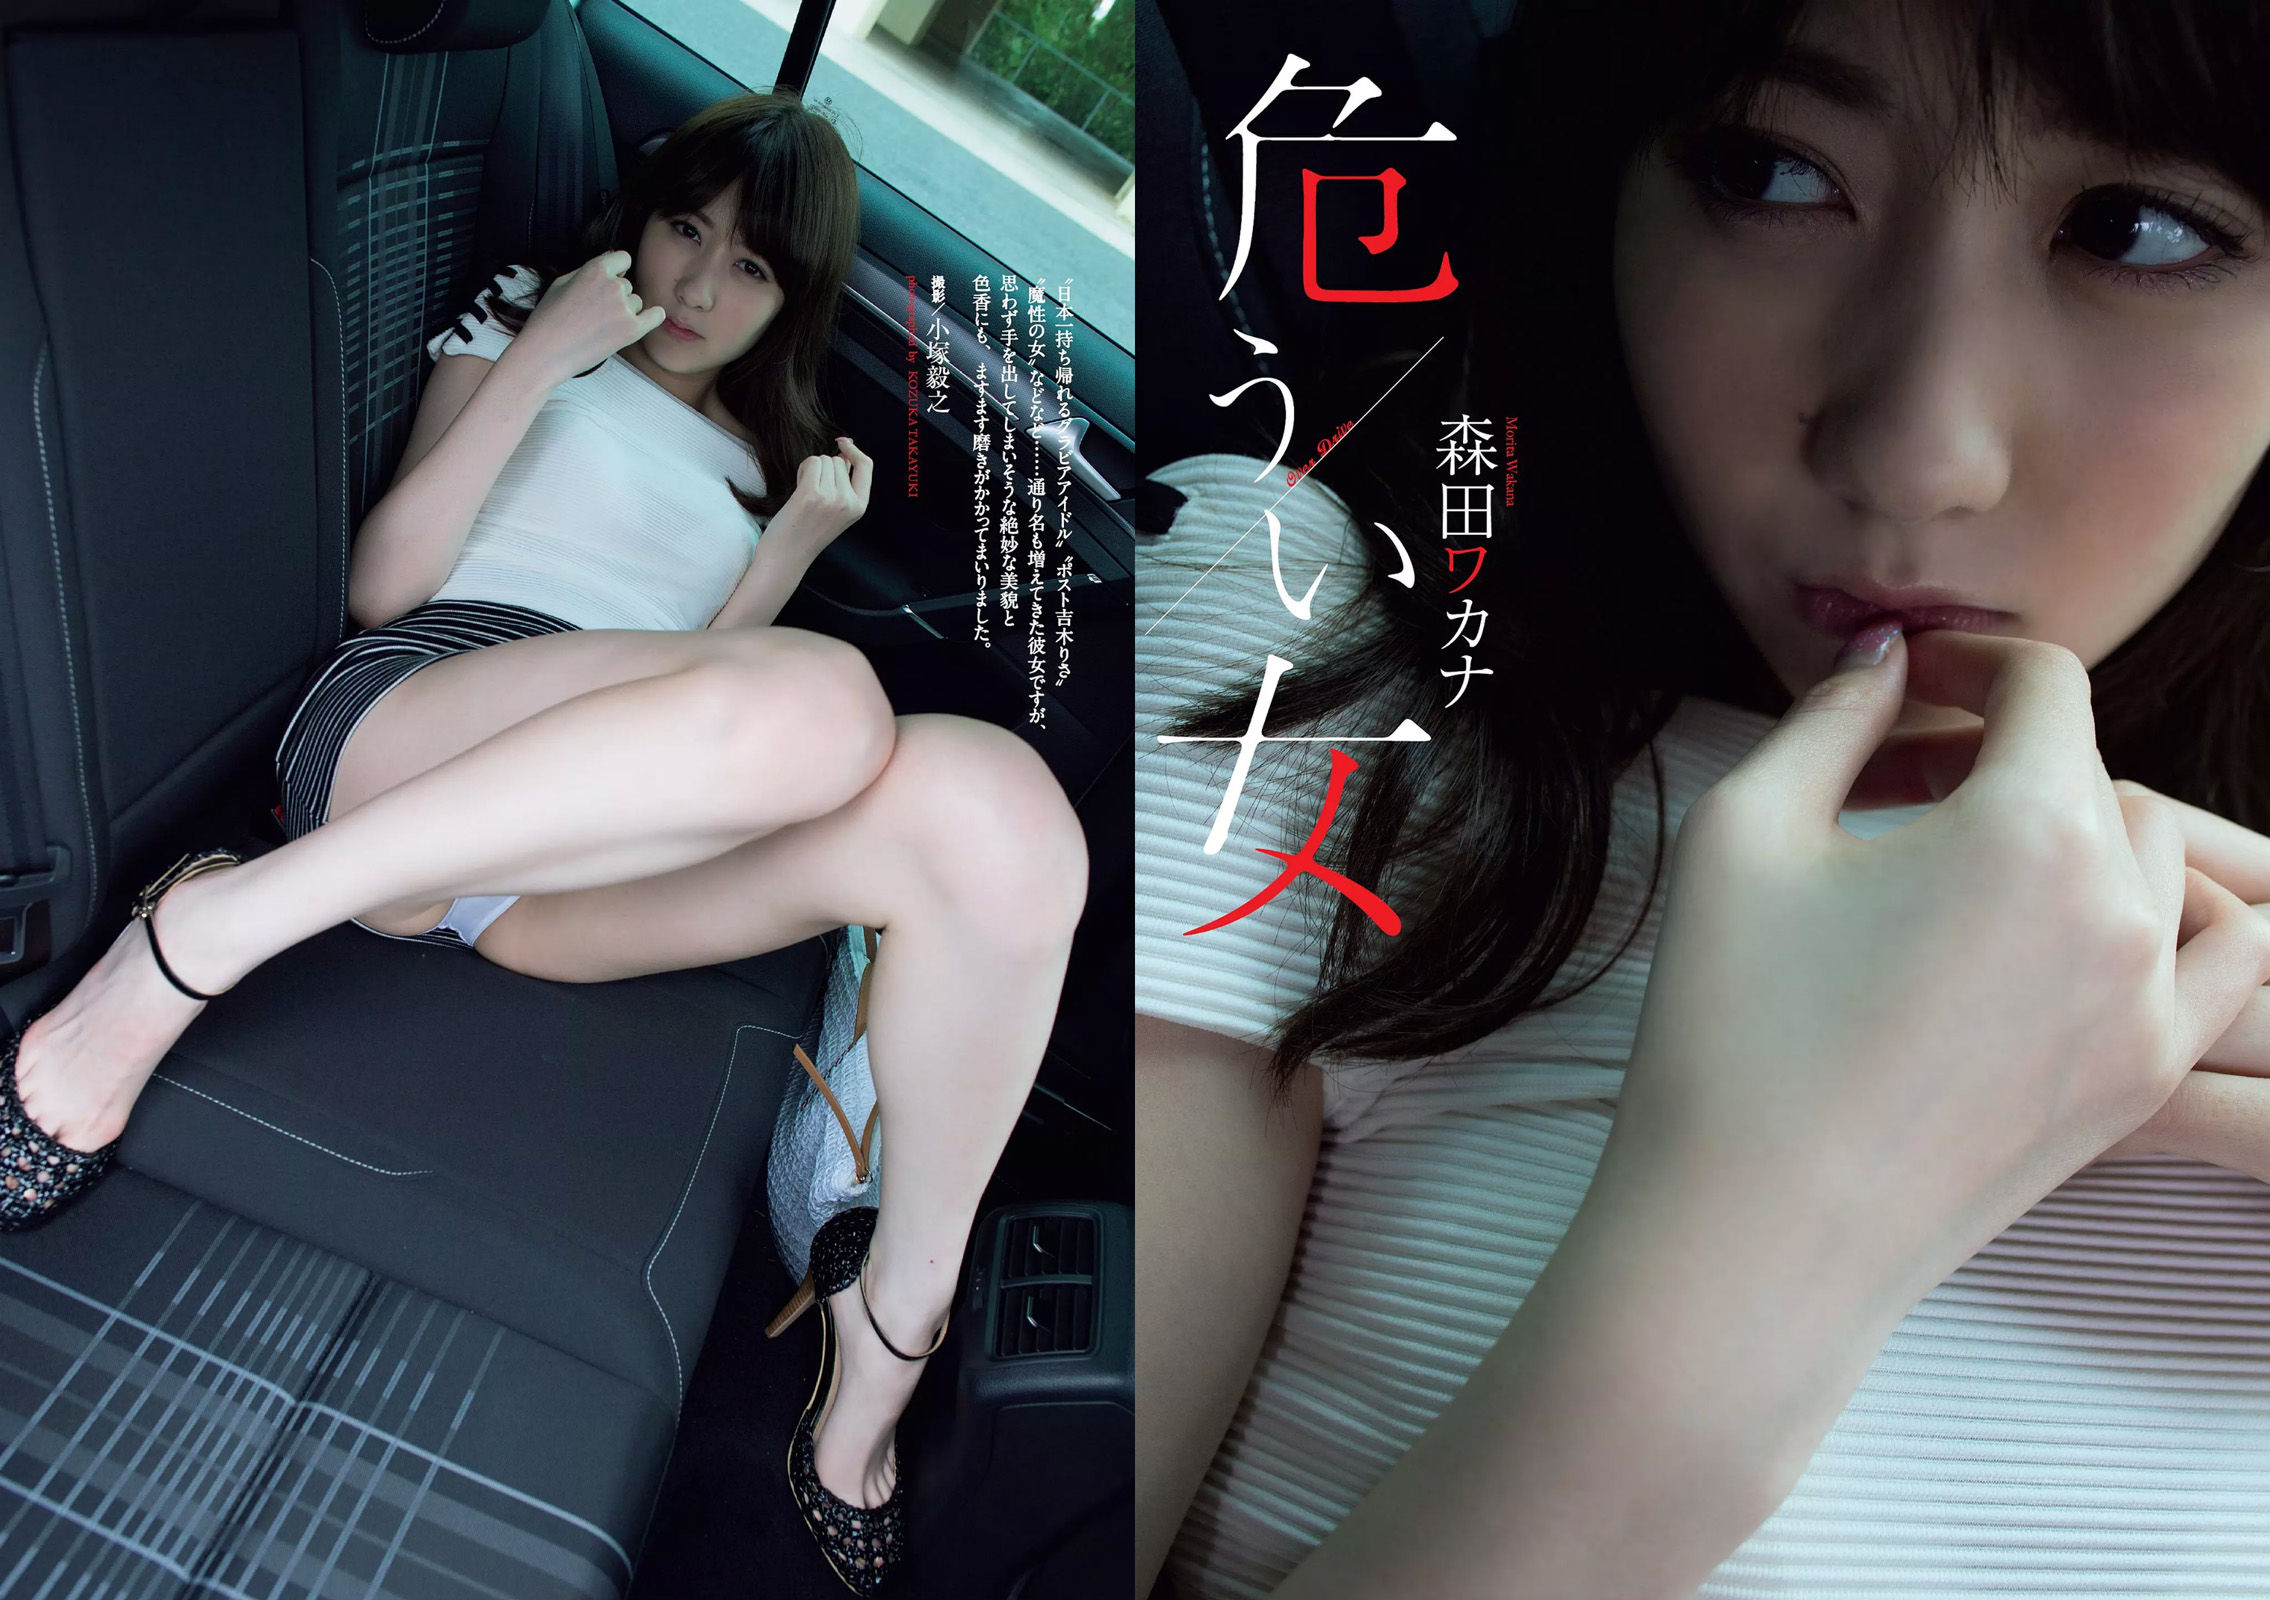 Lembah Ohara Yuno Hanazumi Aoi Wakana Nashiko Momotsuki Fujino Shiho Morita Wakana [Playboy Mingguan] Majalah Foto No.33 2018